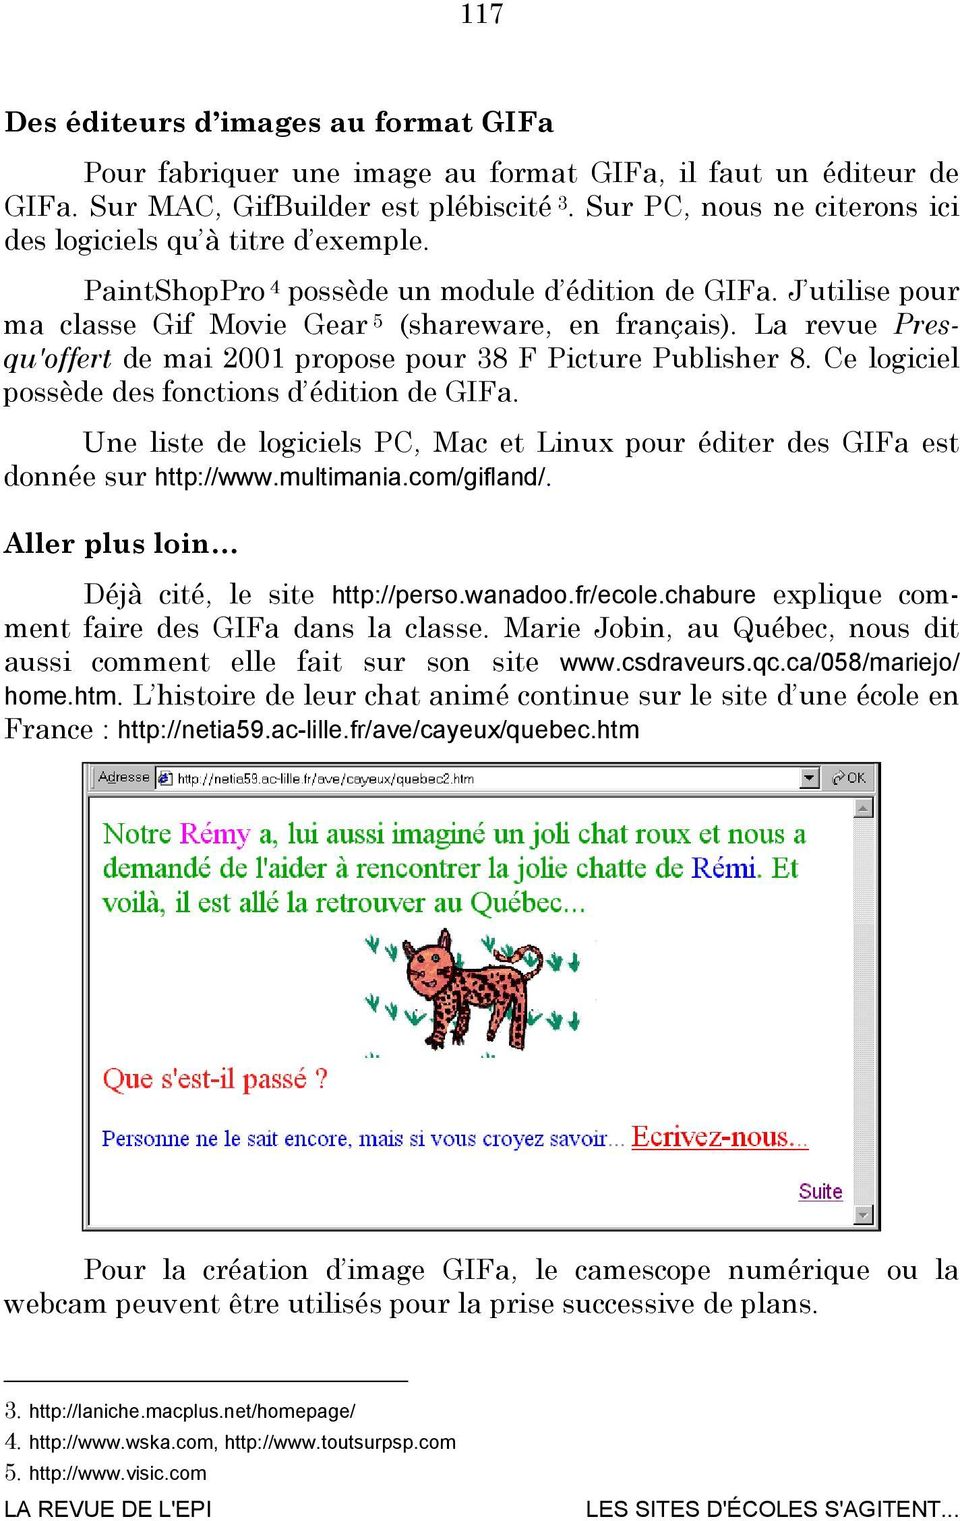 La revue Presqu'offert de mai 2001 propose pour 38 F Picture Publisher 8. Ce logiciel possède des fonctions d édition de GIFa.